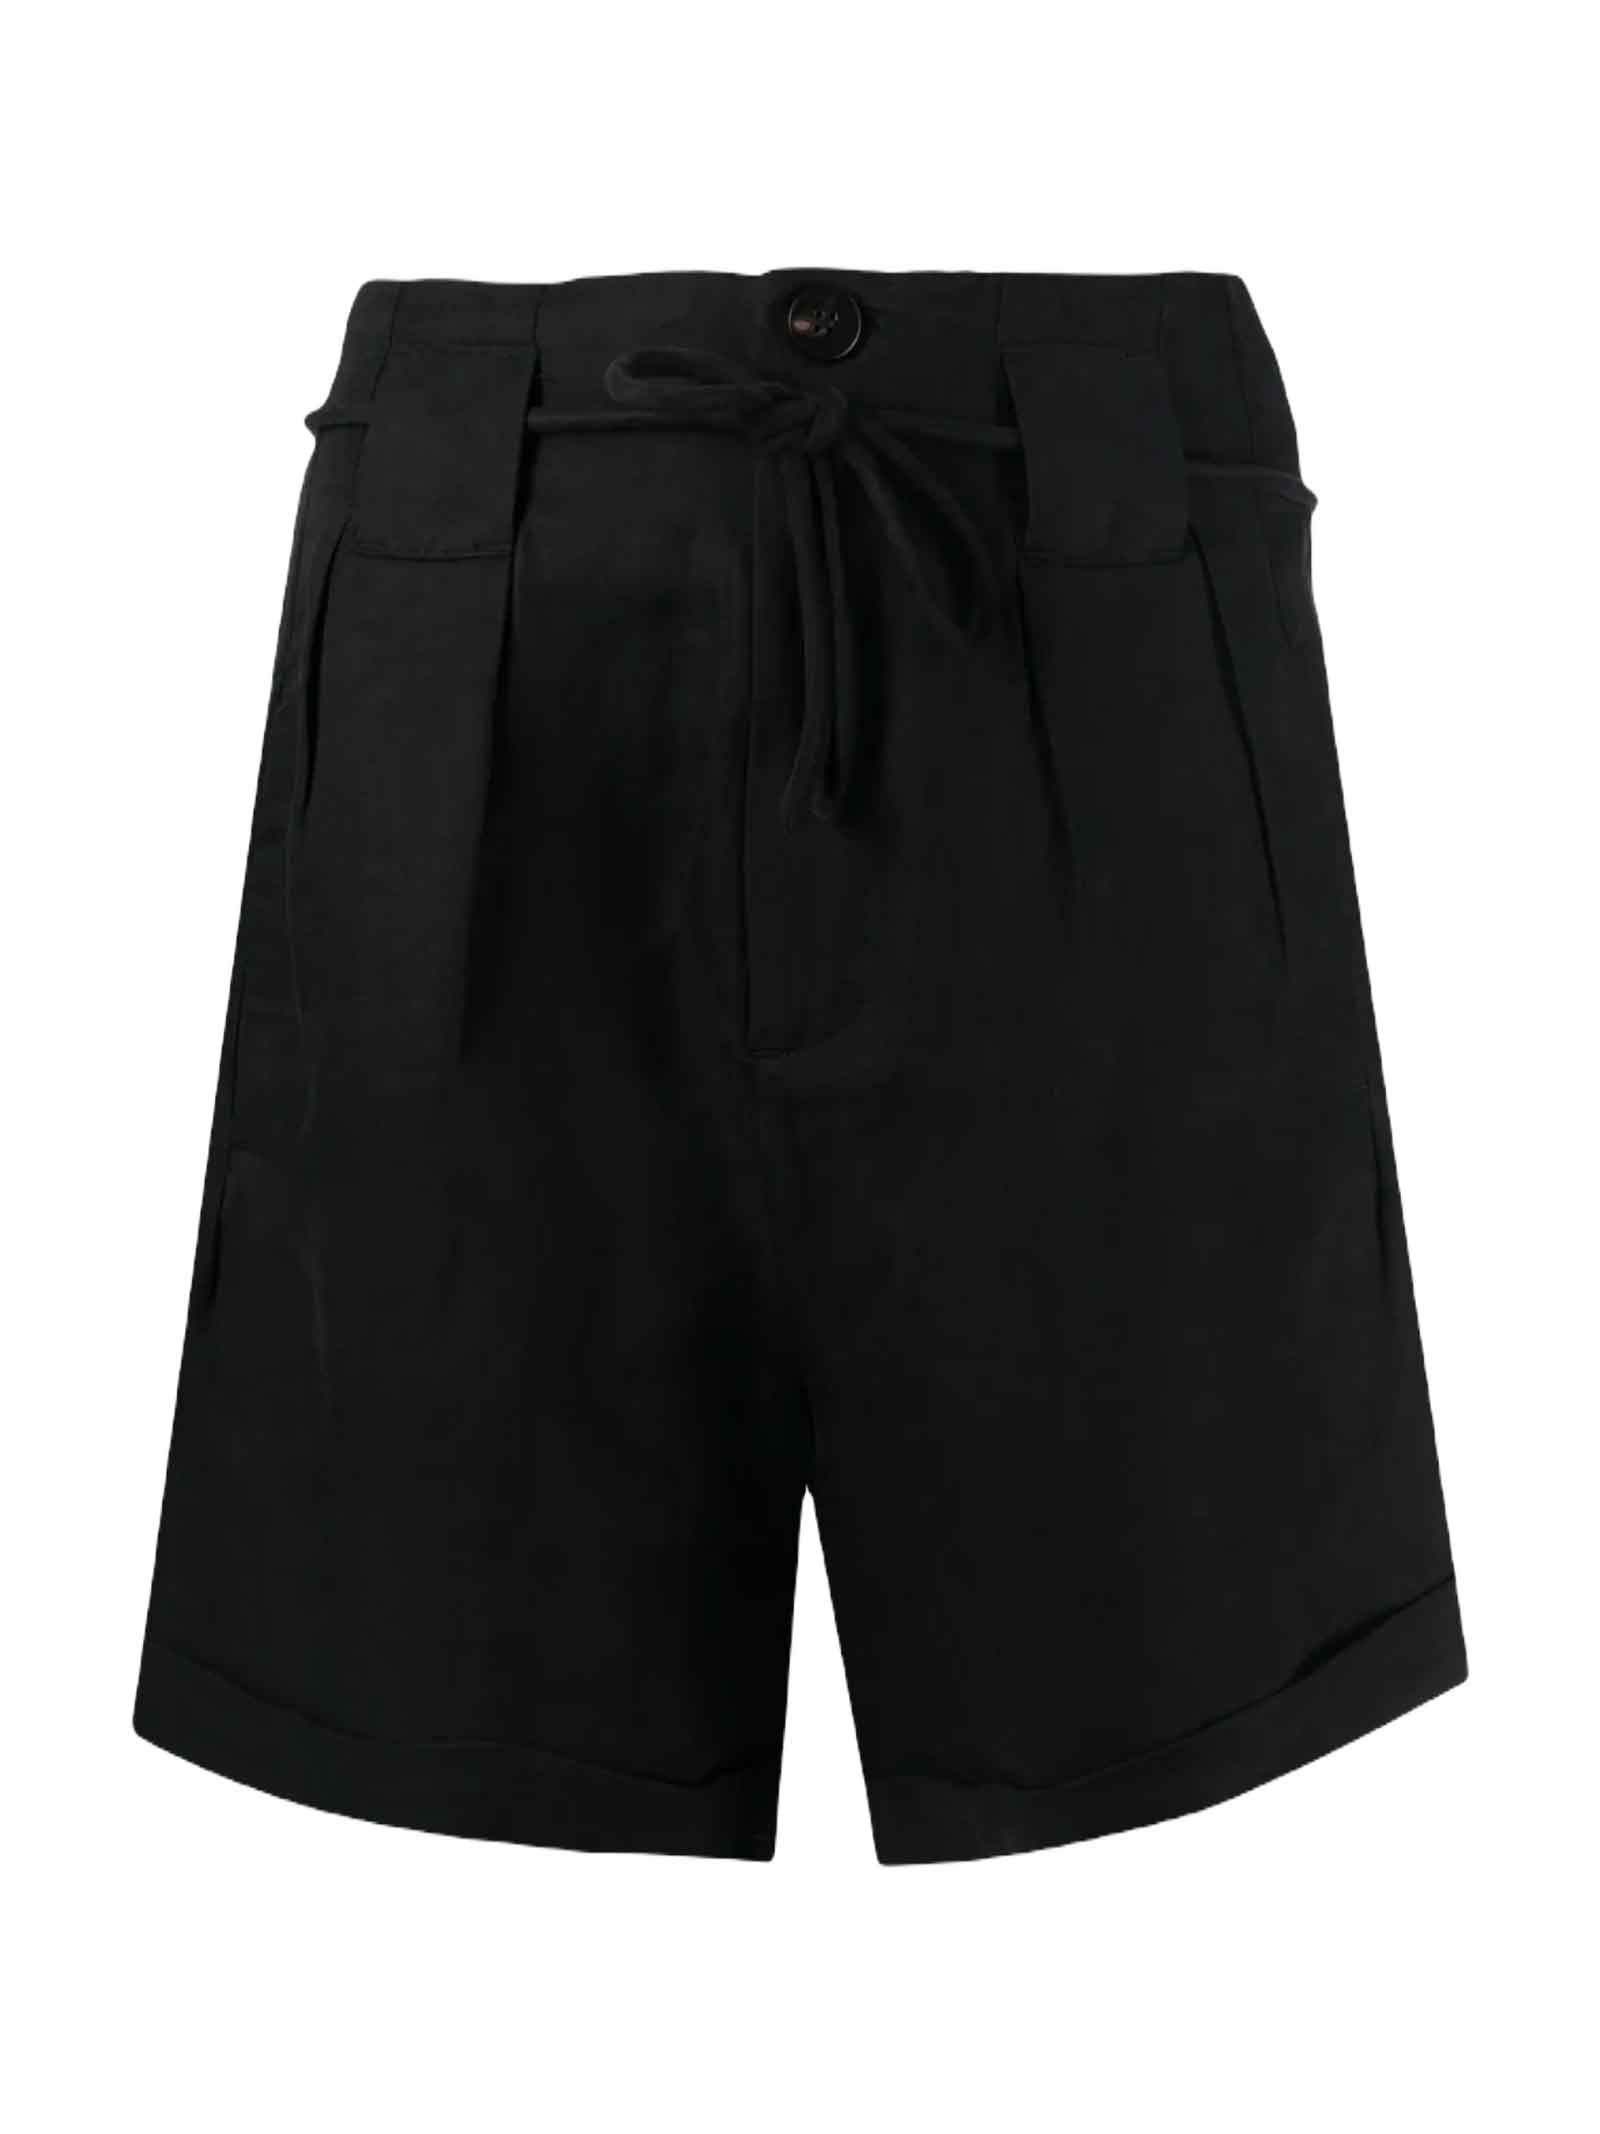 Scotch & Soda Black Shorts Women - Nero - female - Size: Large